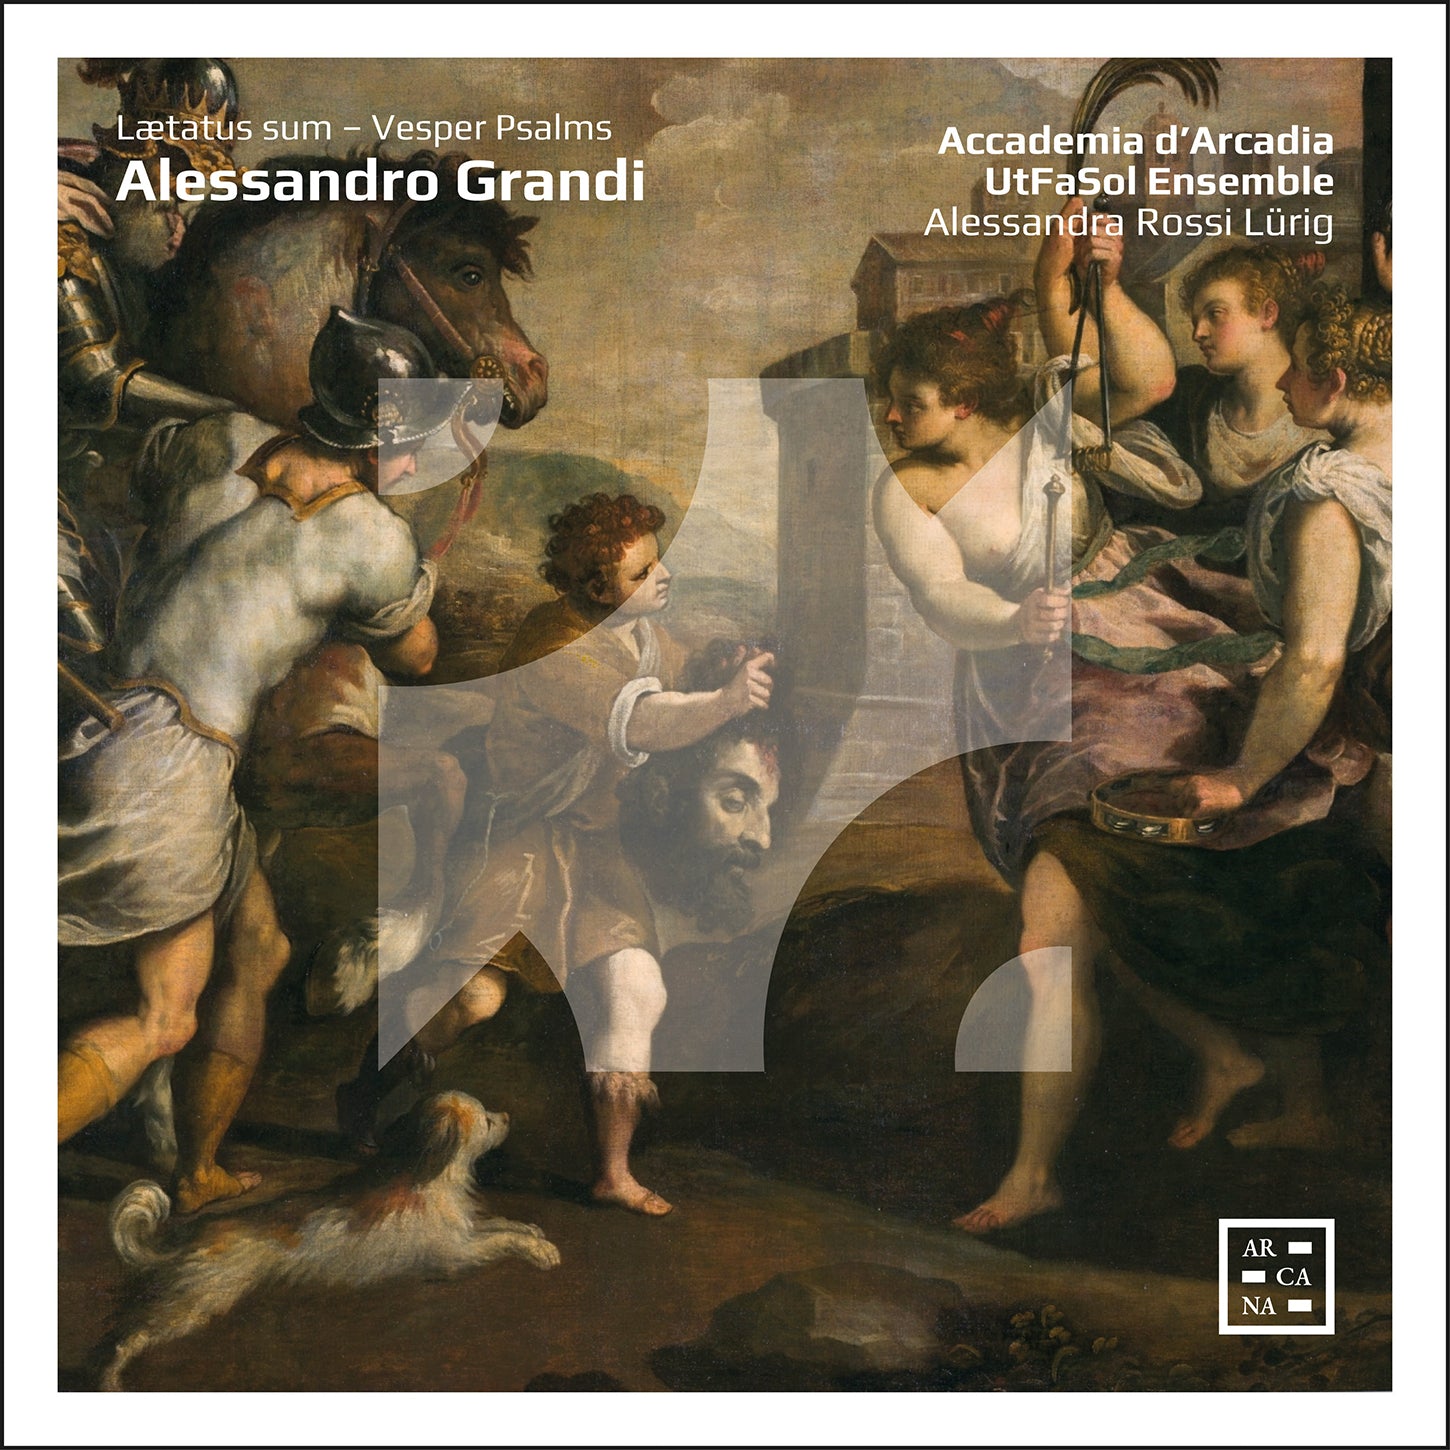 Grandi: Laetatus Sum - Vesper Psalms / Rossi Lürig, UtFaSol Ensemble, Accademia d'Arcadia